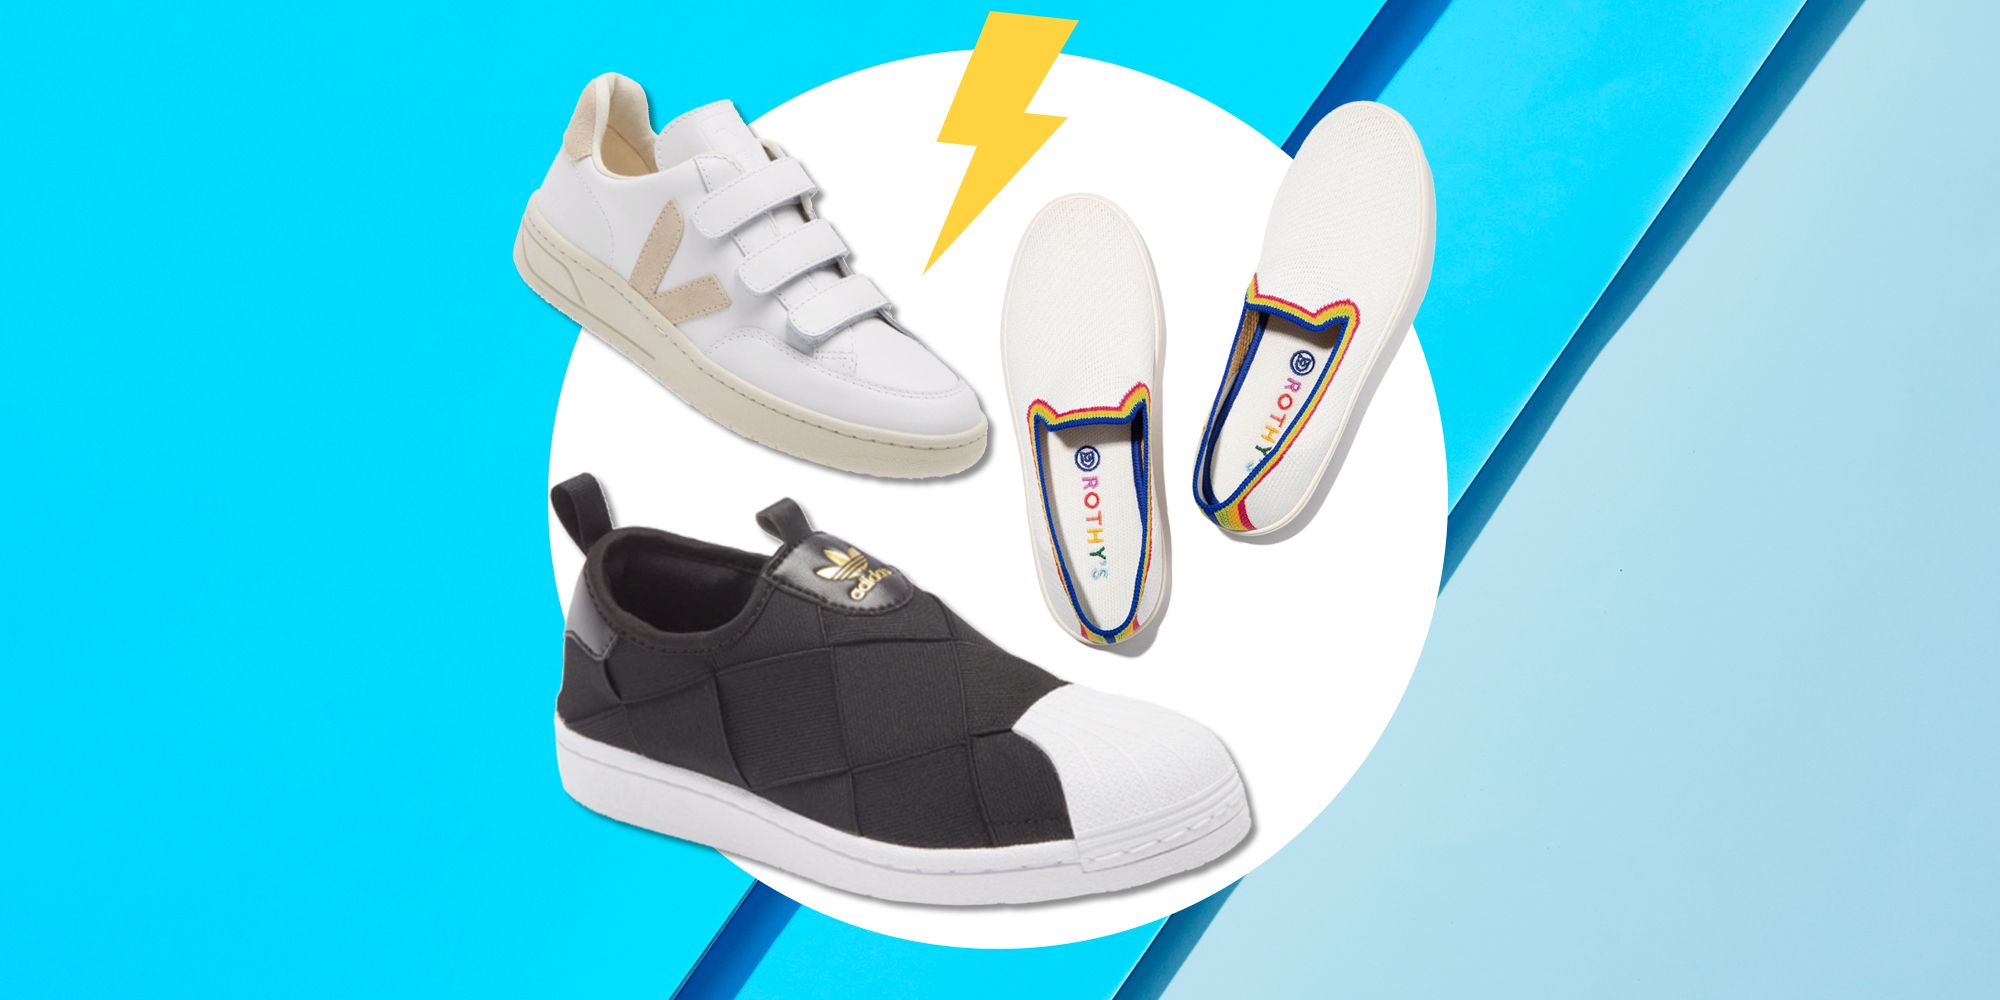 Slip-On Shoes - Buy Slip-On Shoes for Men, Women & Kids Online | Myntra